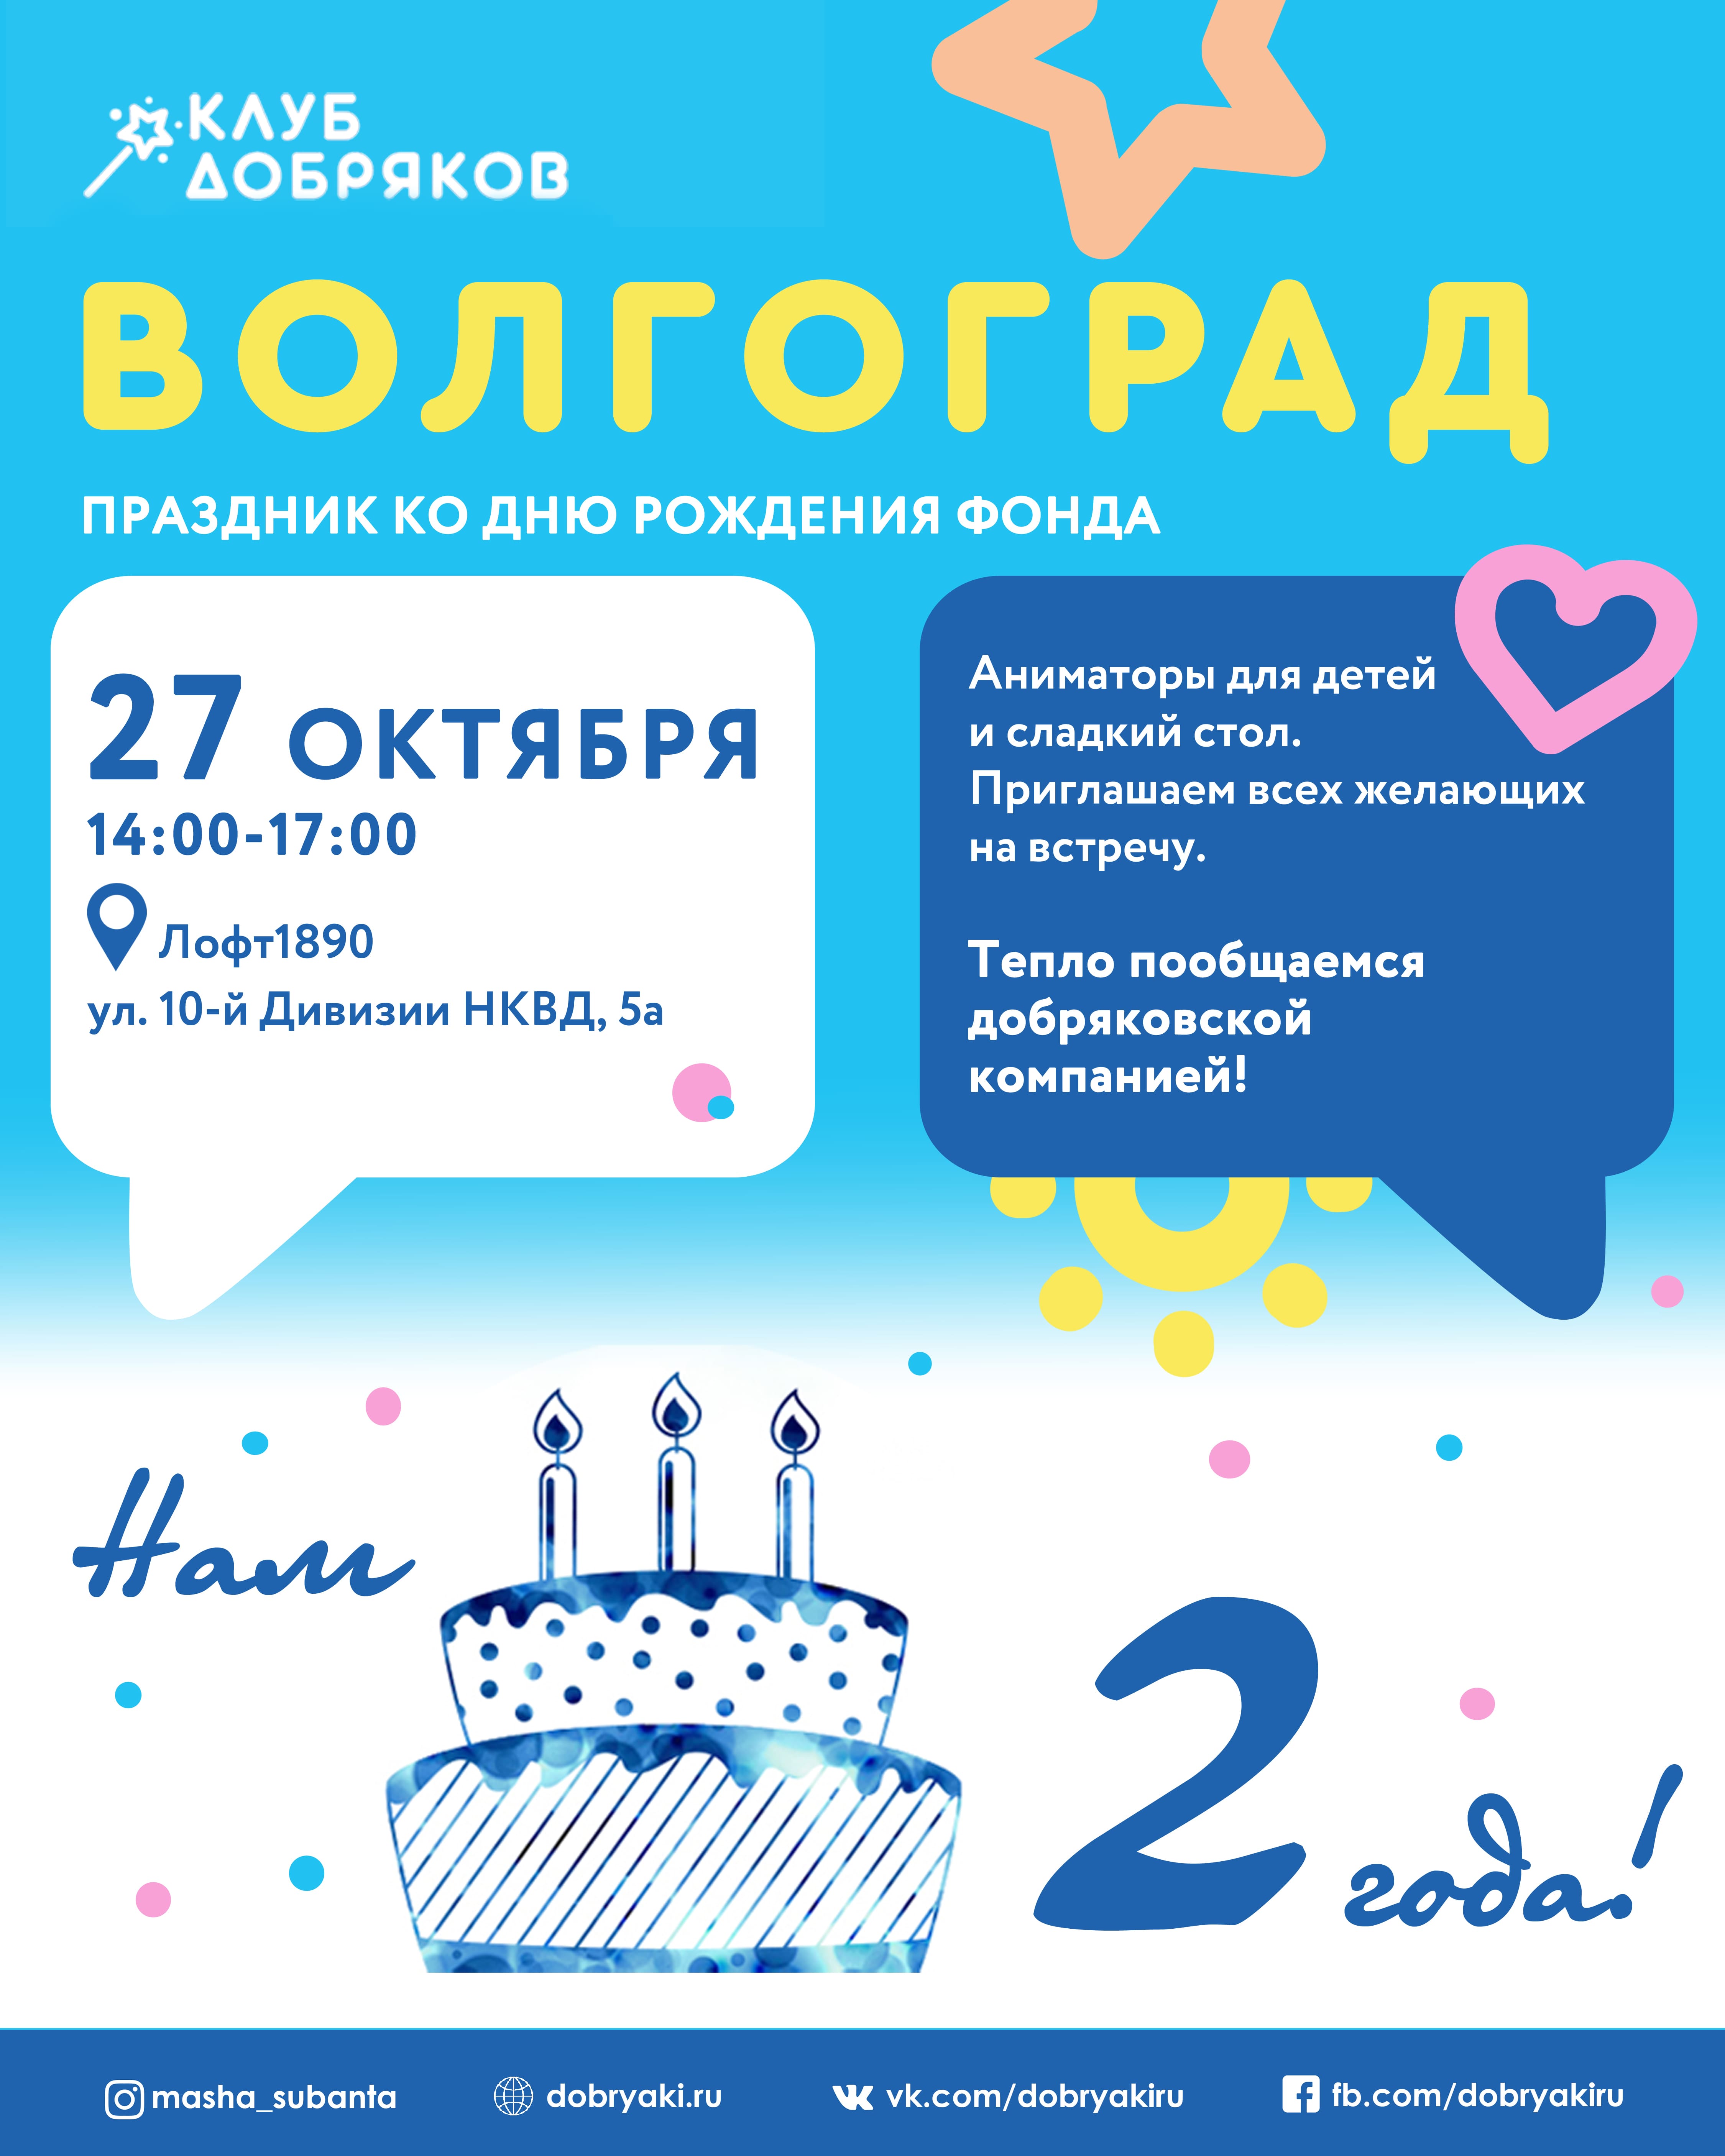 Праздник в честь дня рождения Клуба добряков пройдет в Волгограде